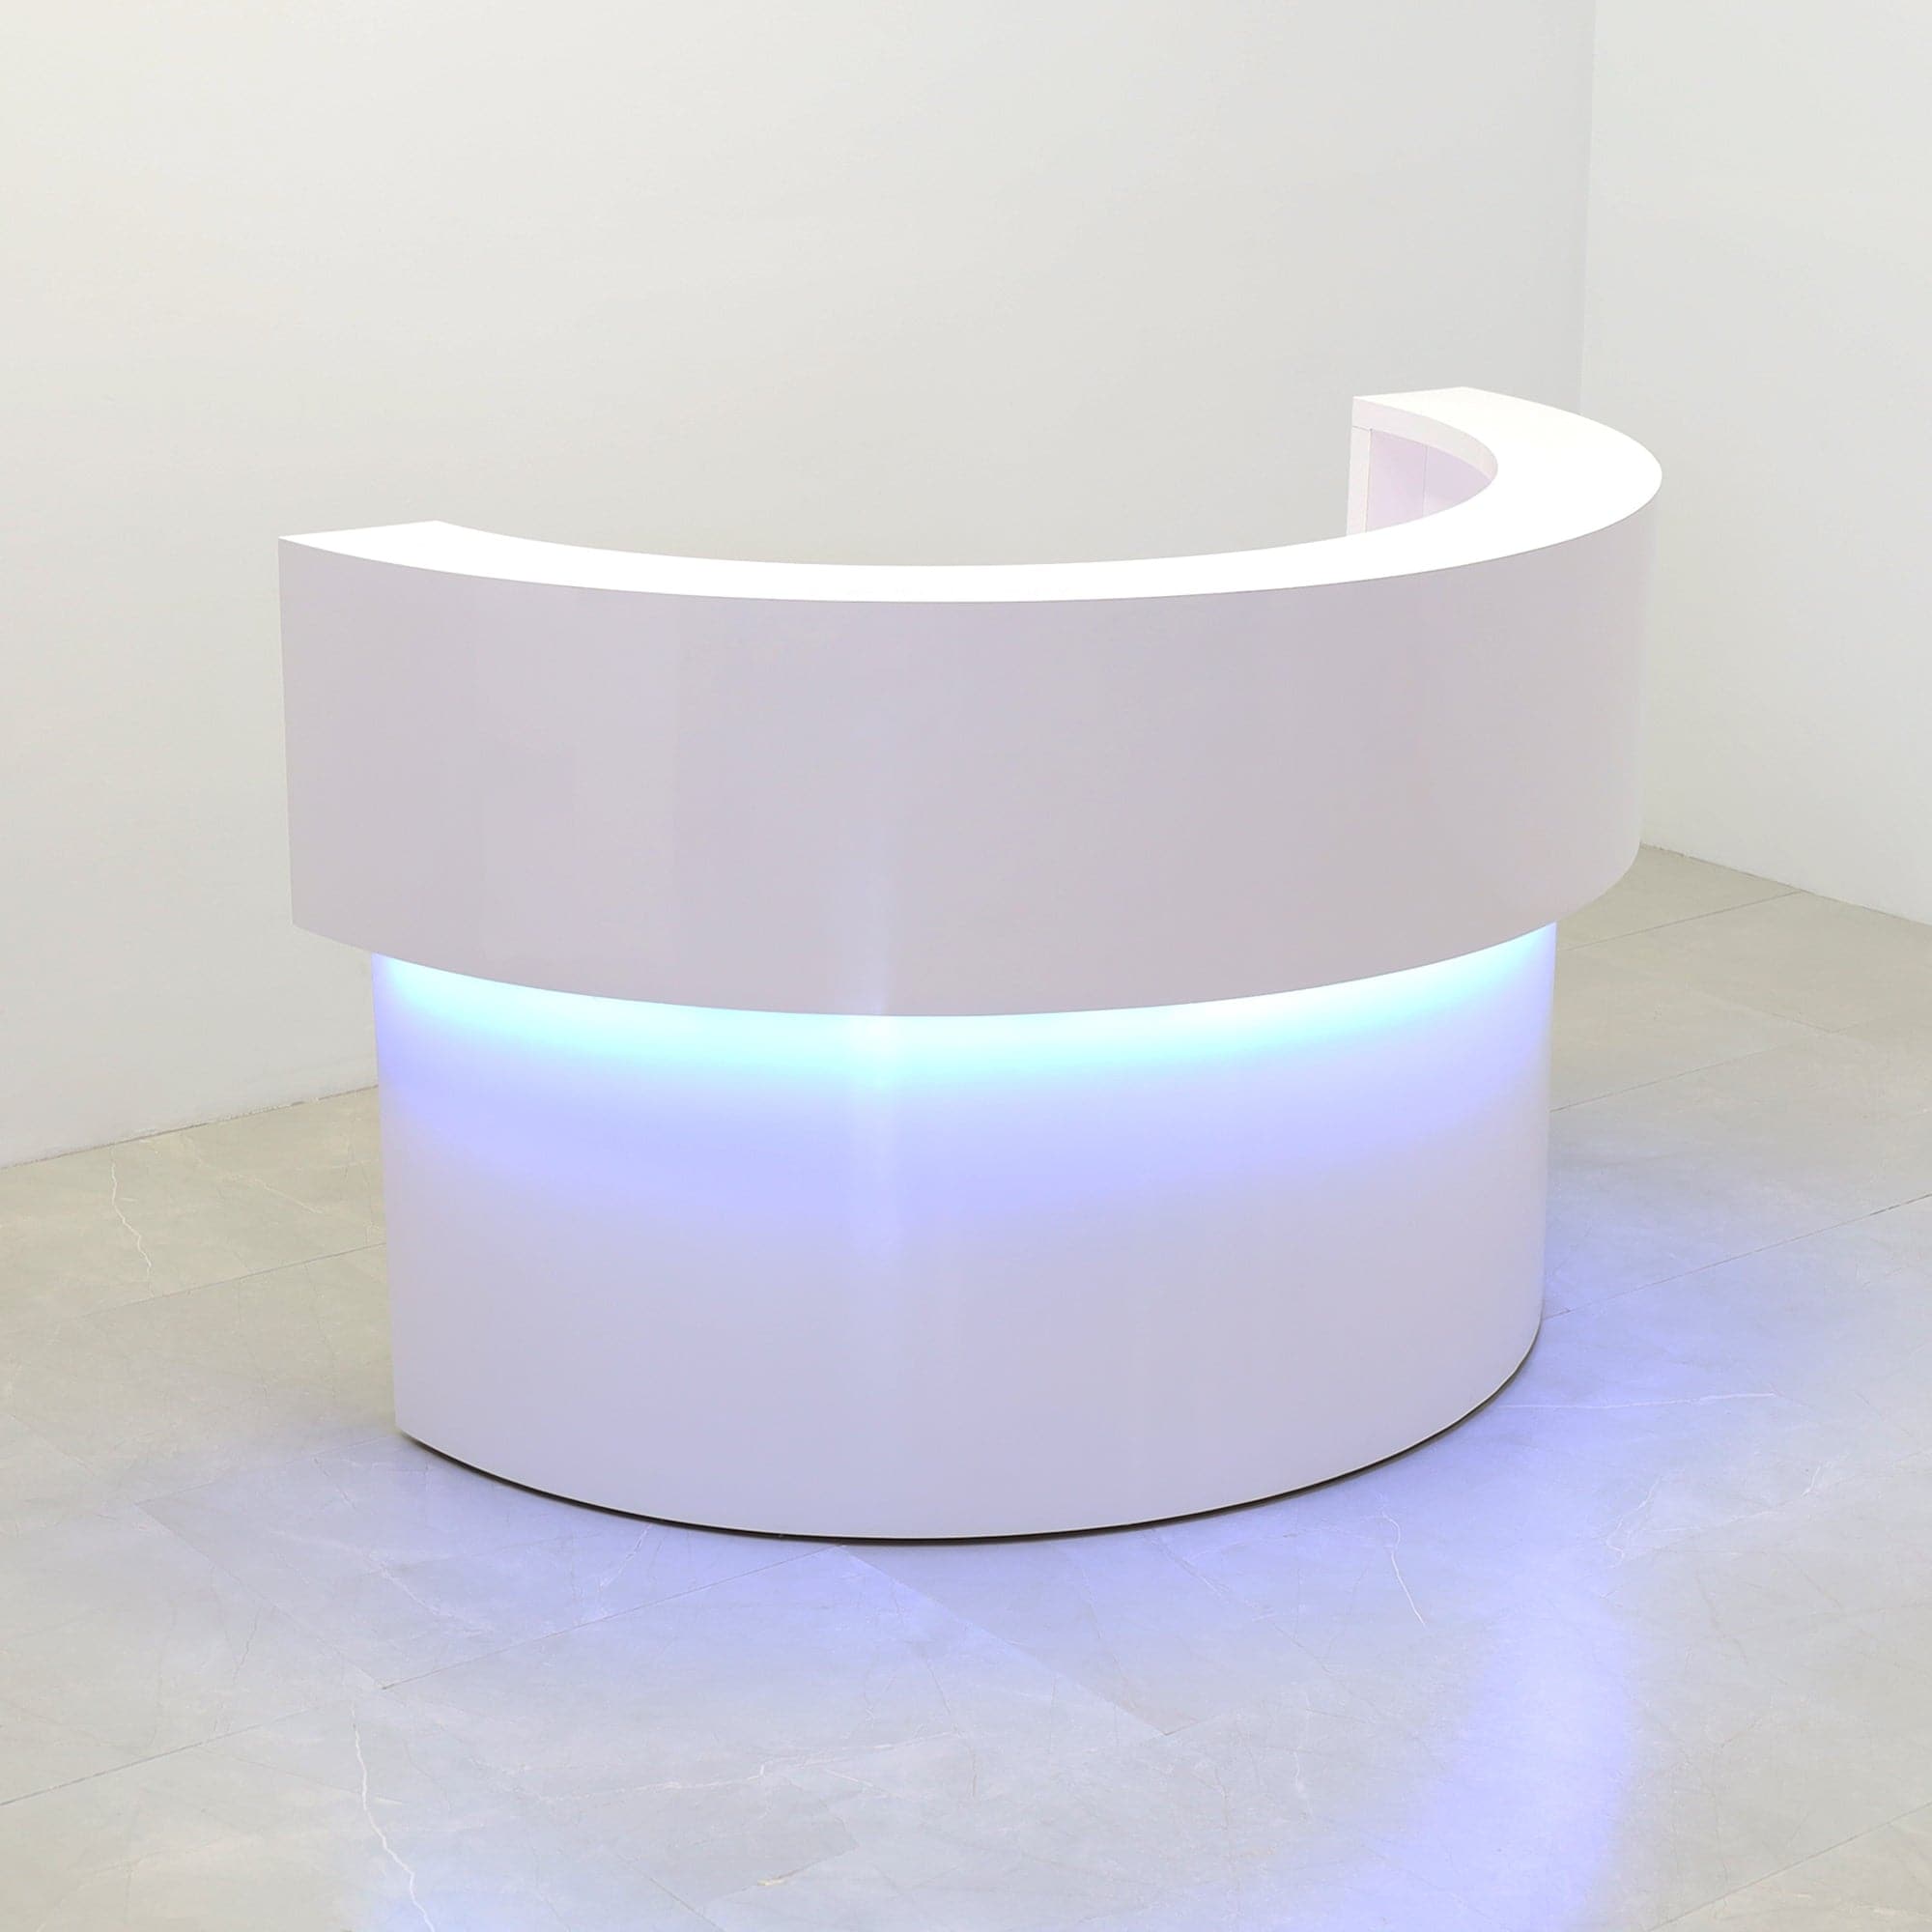 Boca Half Moon Reception Desk in White Gloss Laminate Desk, with multi-colored LED shown here.